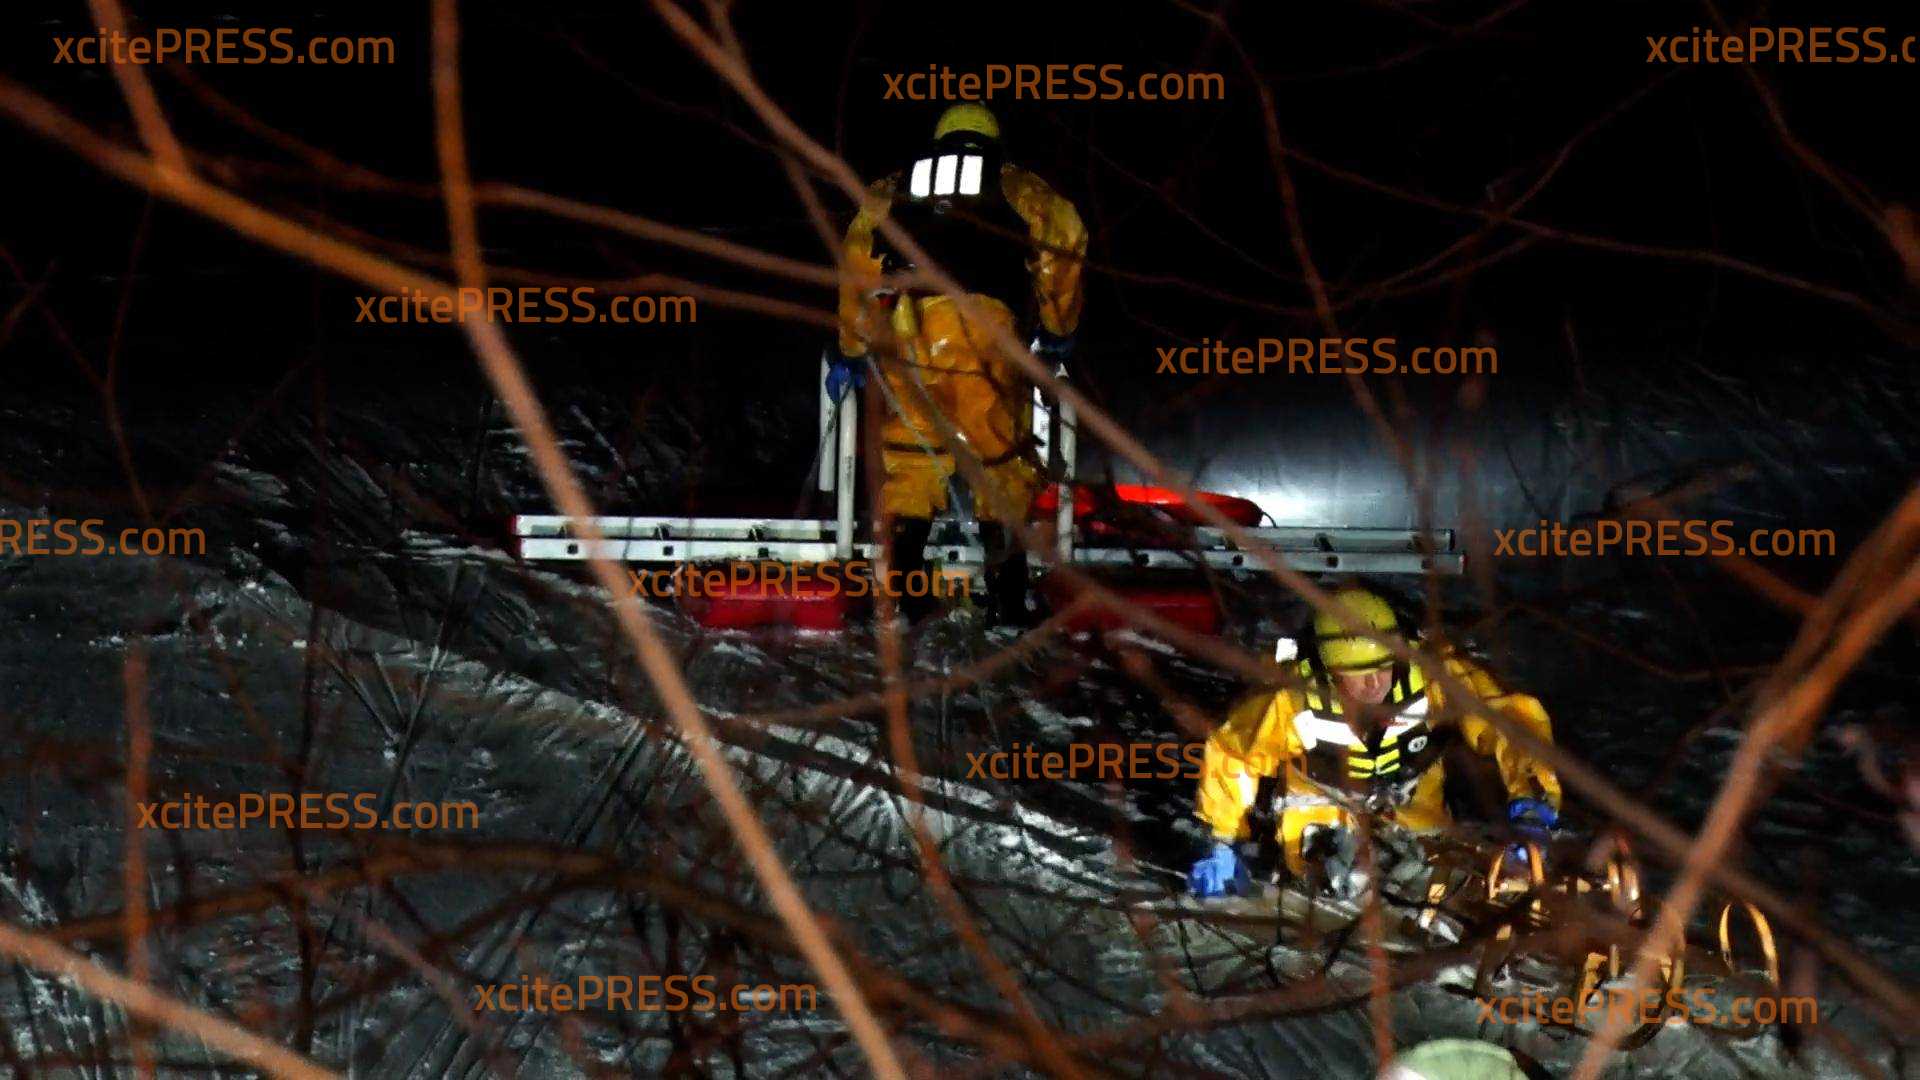 Eisdecke gibt nach - Vier Menschen in Kiesgrube Leuben eingebrochen: Feuerwehr rettet Personen